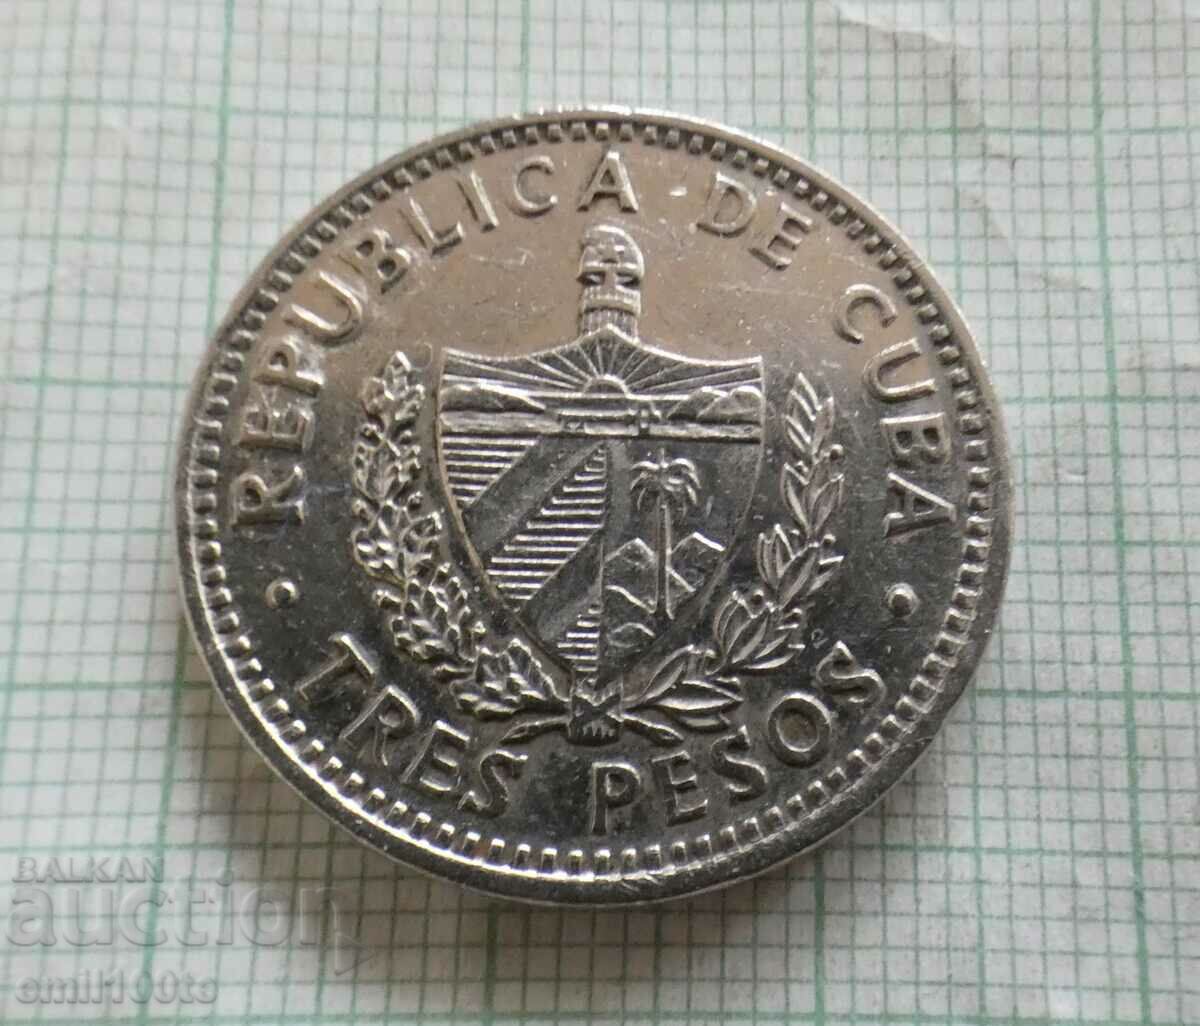 3 pesos 1992 Cuba